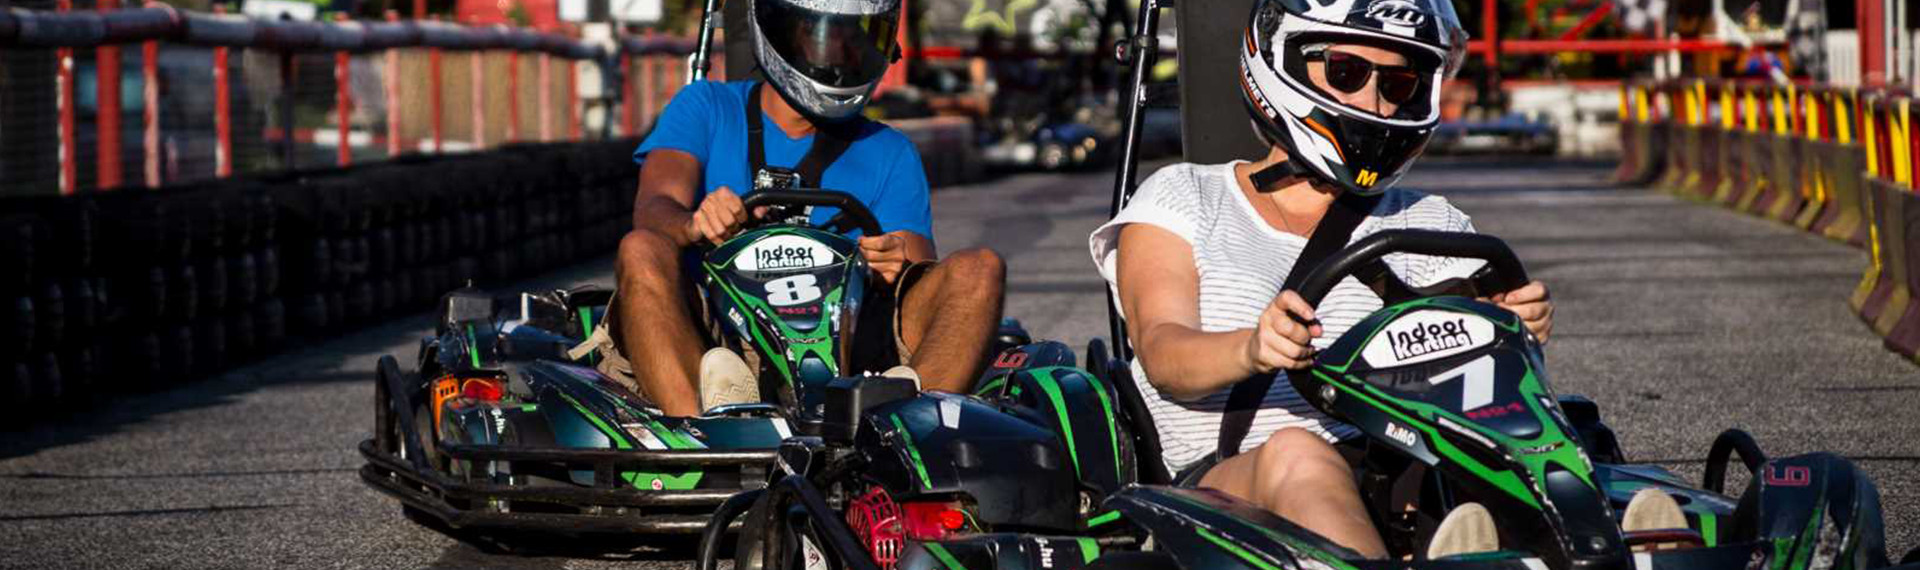 Grand Prix de Karting à Budapest | Faites tomber le record de la piste | Pissup